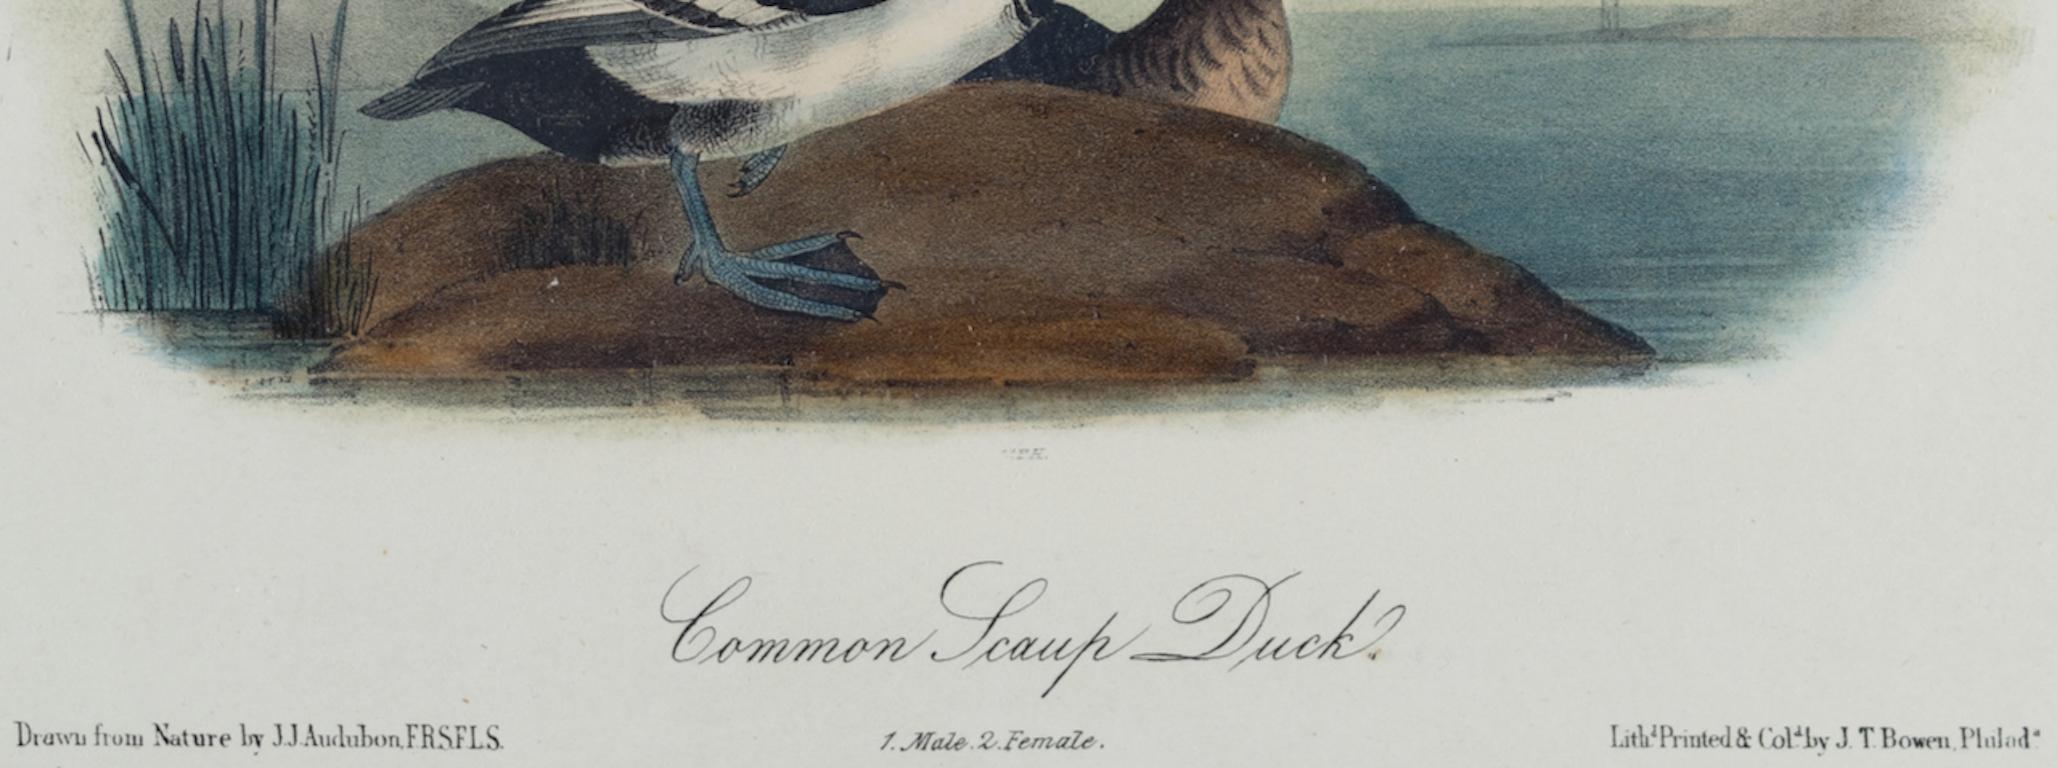 Dies ist ein Original aus dem 19. Jahrhundert John James Audubon handkolorierte Lithographie mit dem Titel 